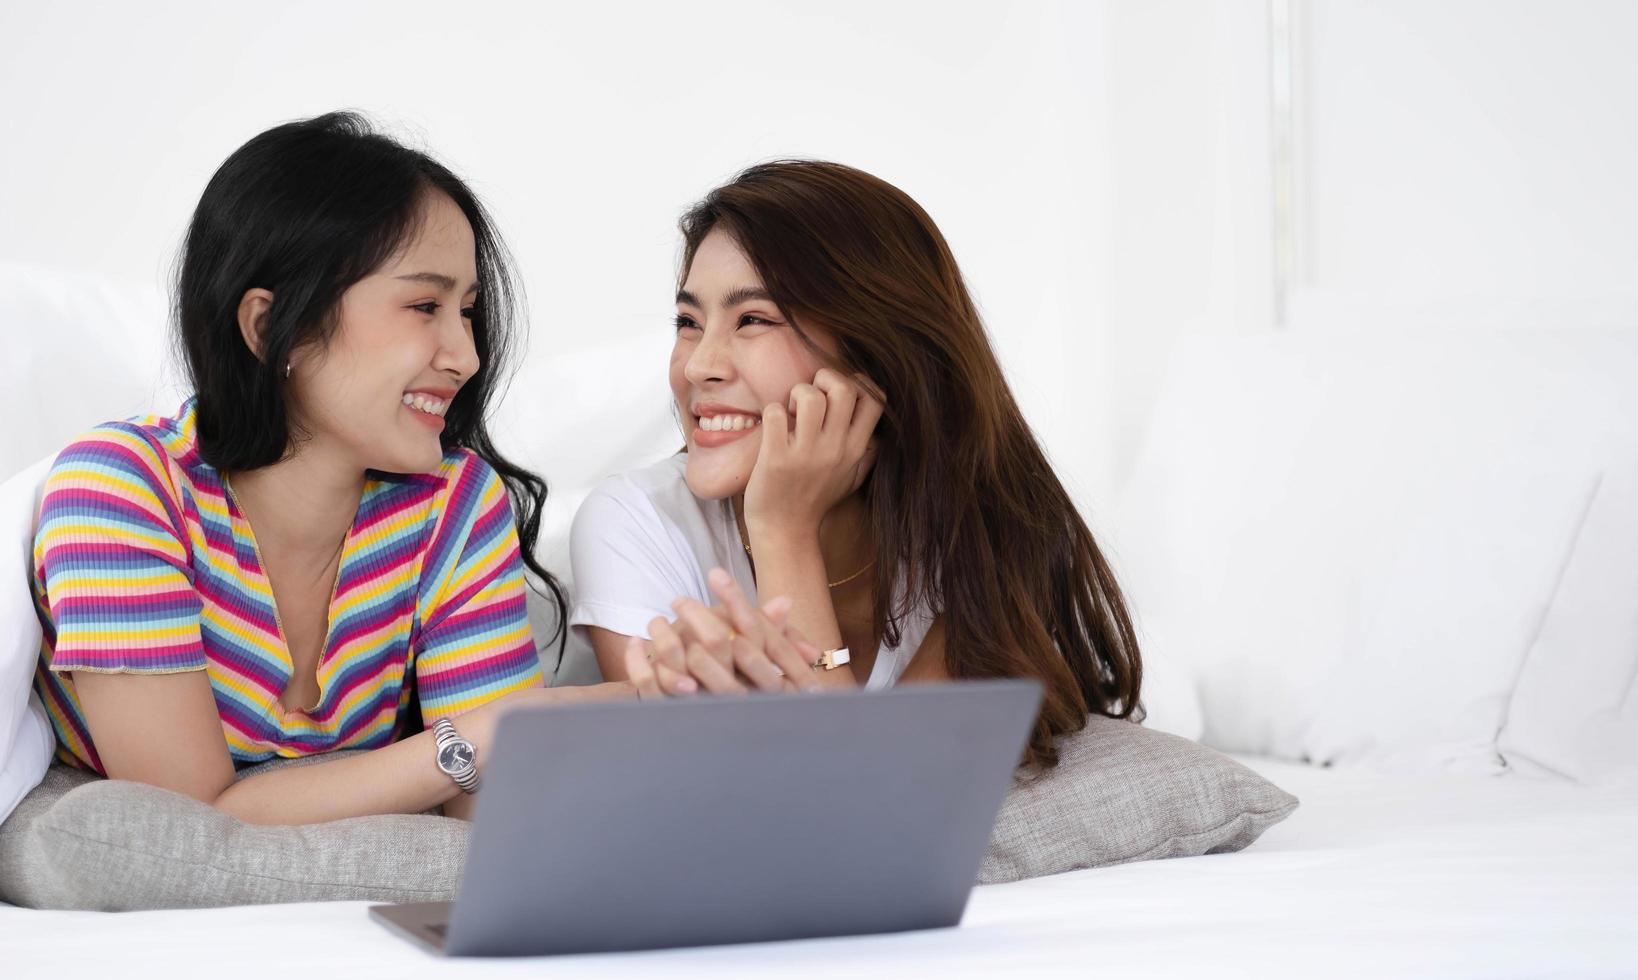 jonge Aziatische lgbt-lesbische stellen gebruiken laptops om informatie te zoeken om een nieuw huis te kopen. terwijl ze elkaar omhelzen in bed. foto